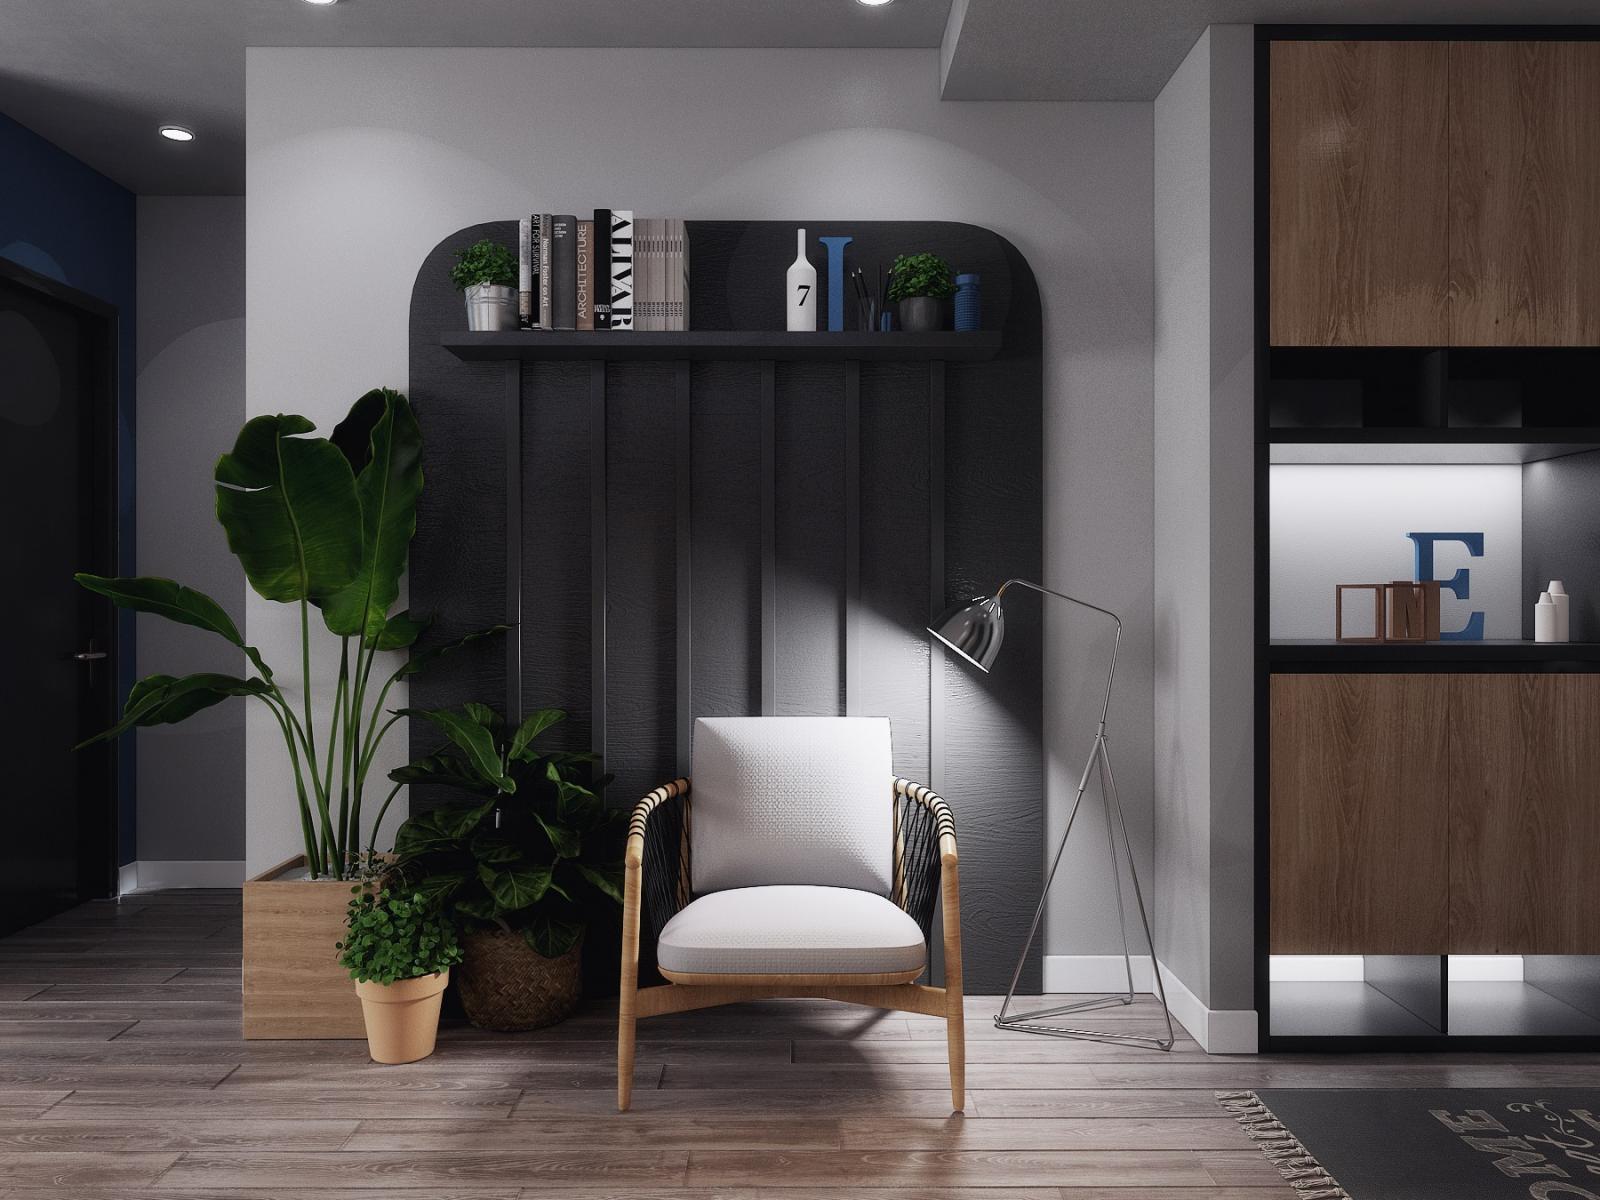 hình ảnh góc đọc sách, thư giãn ấn tượng trong căn hộ 70m2 với kệ sơn đen, ghế ngồi bọc đệm màu trắng, cây xanh trang trí